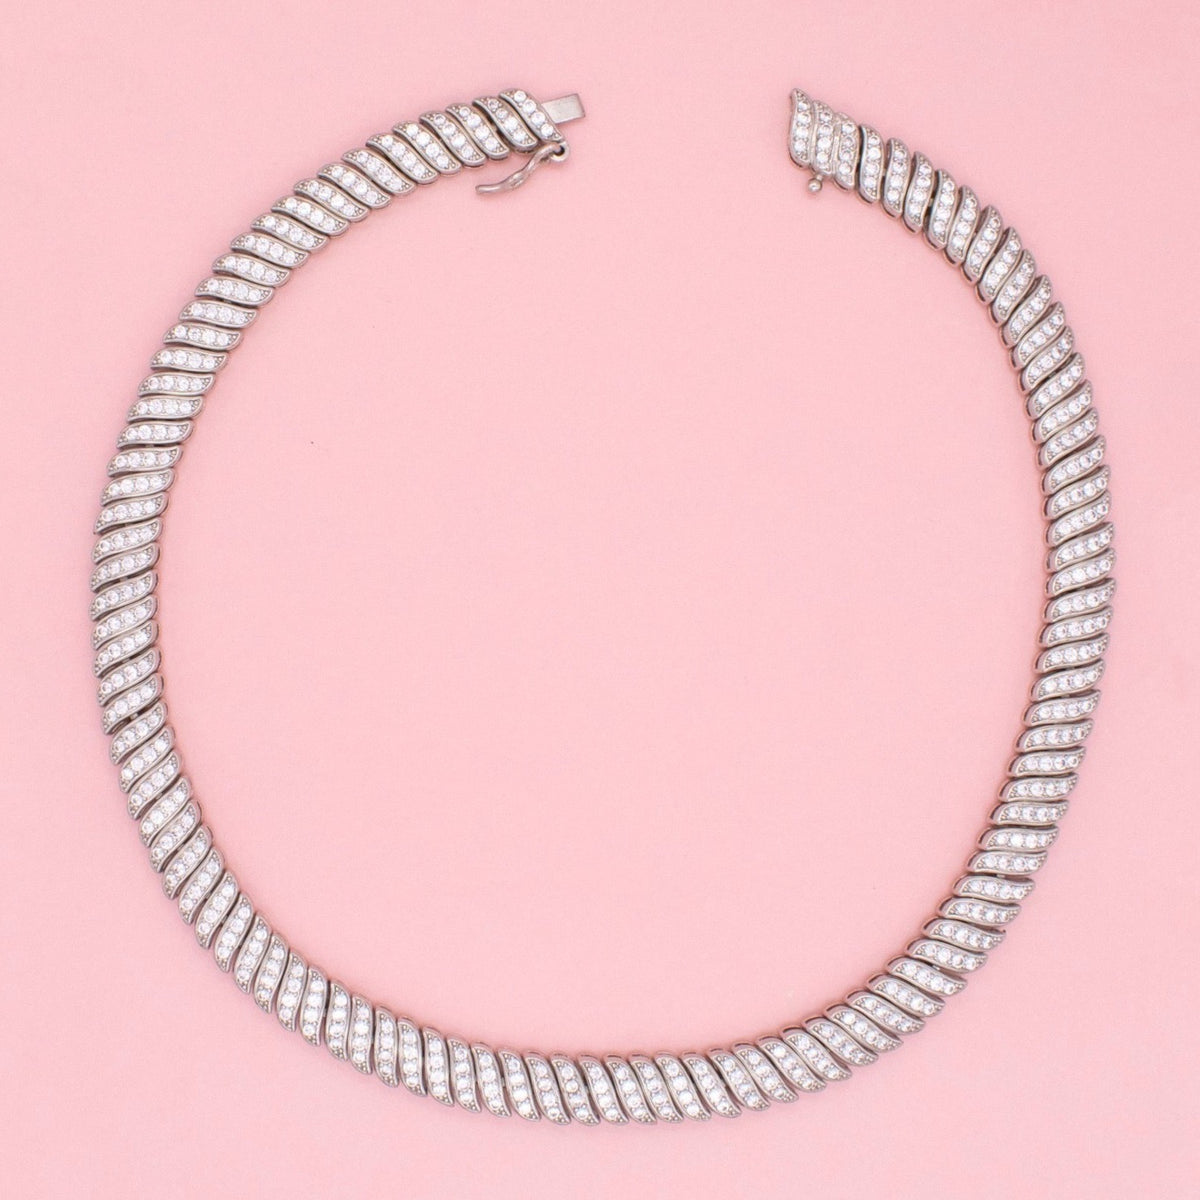 Presley Collar Necklace